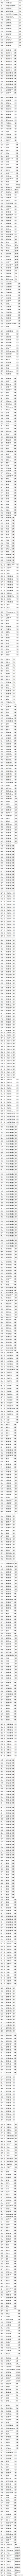 2016年华中科技大学自主招生初审合格名单